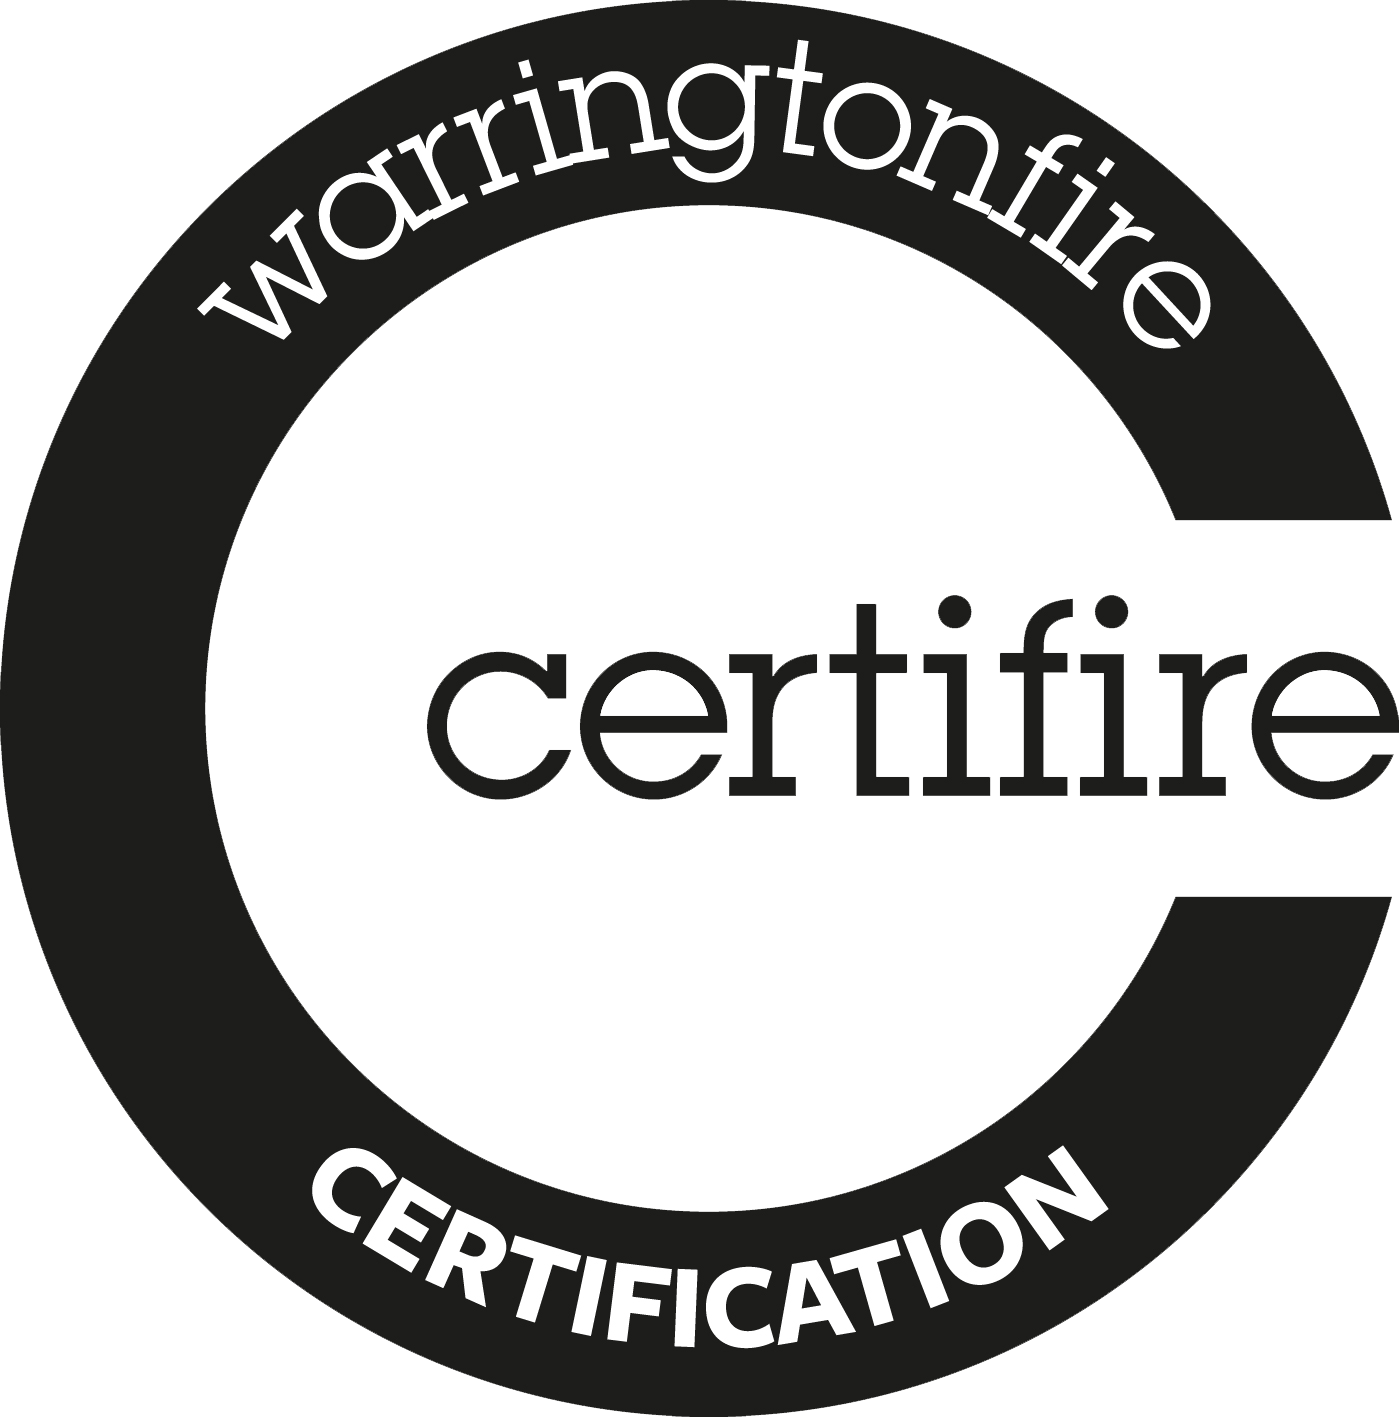 Certifire logo